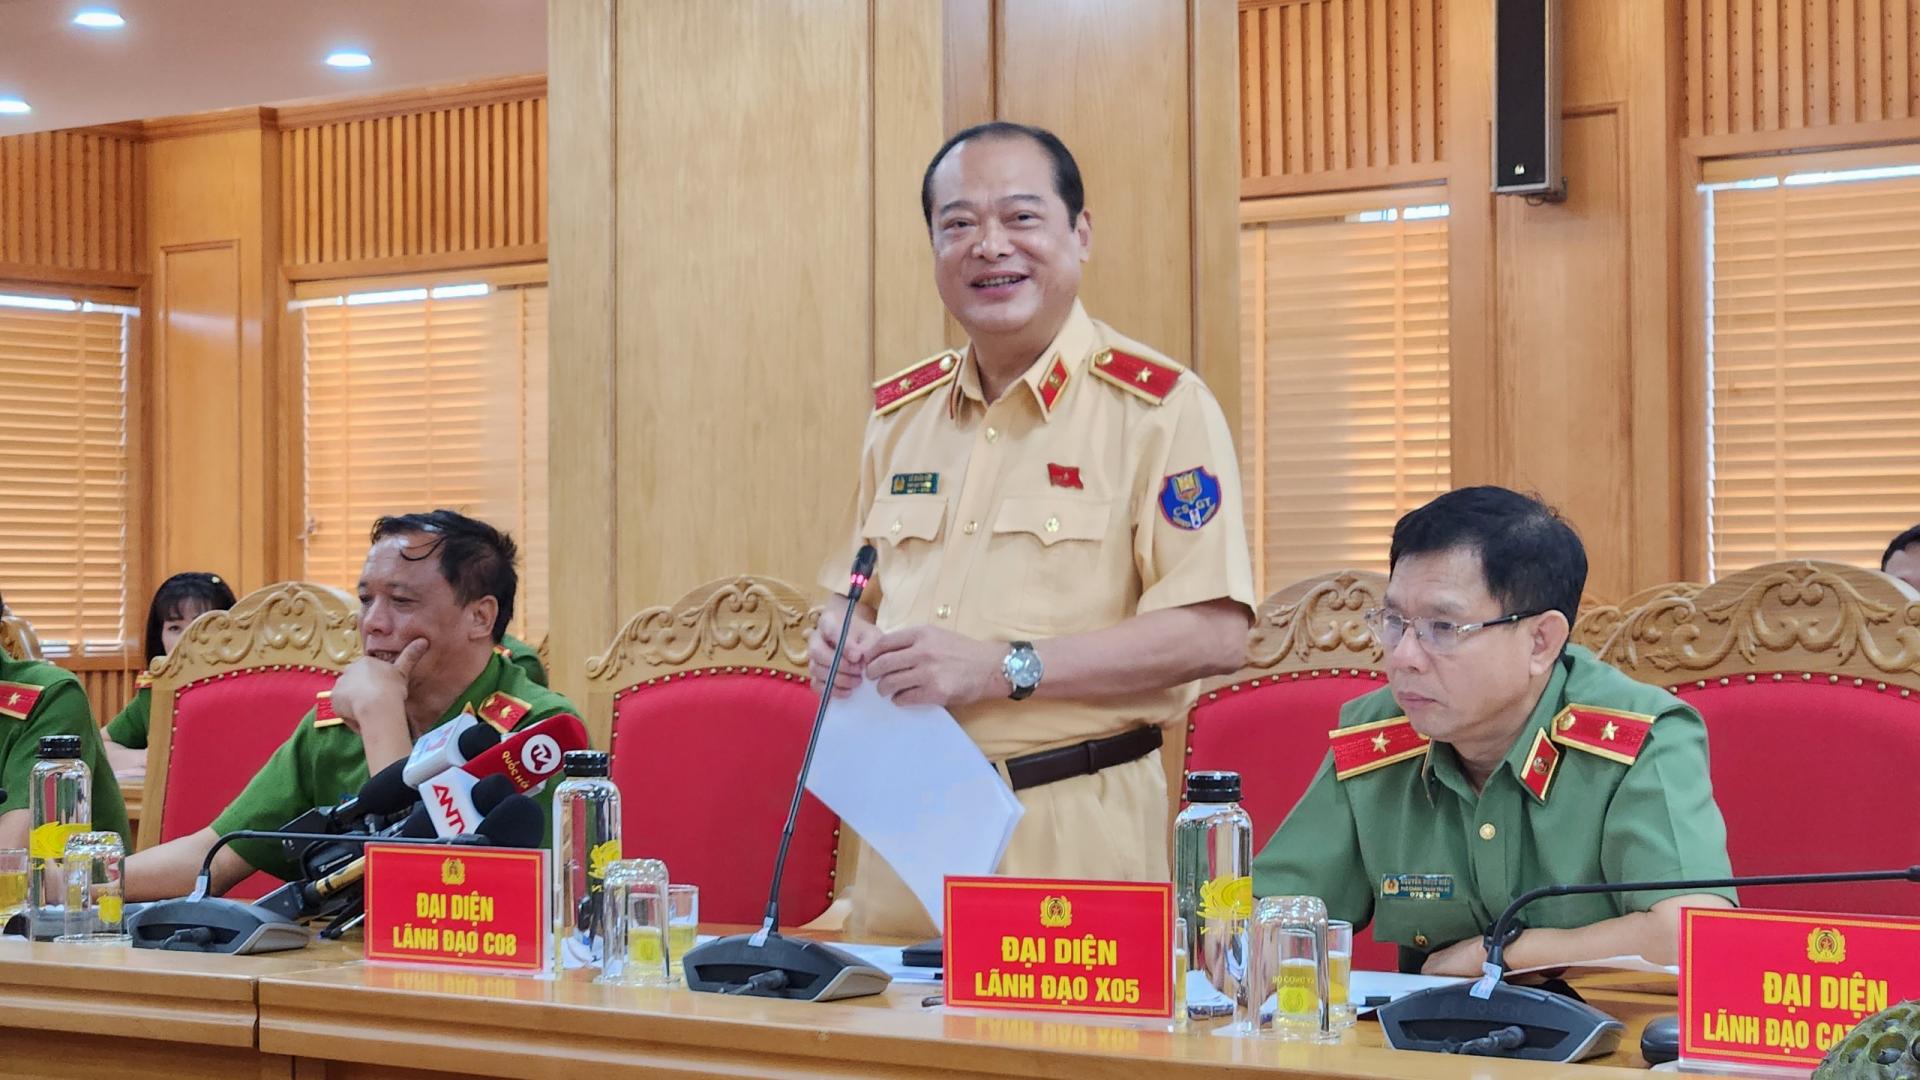 Thiếu tướng Lê Xuân Đức, Cục phó Cục CSGT. Ảnh: Đoàn Bổng 